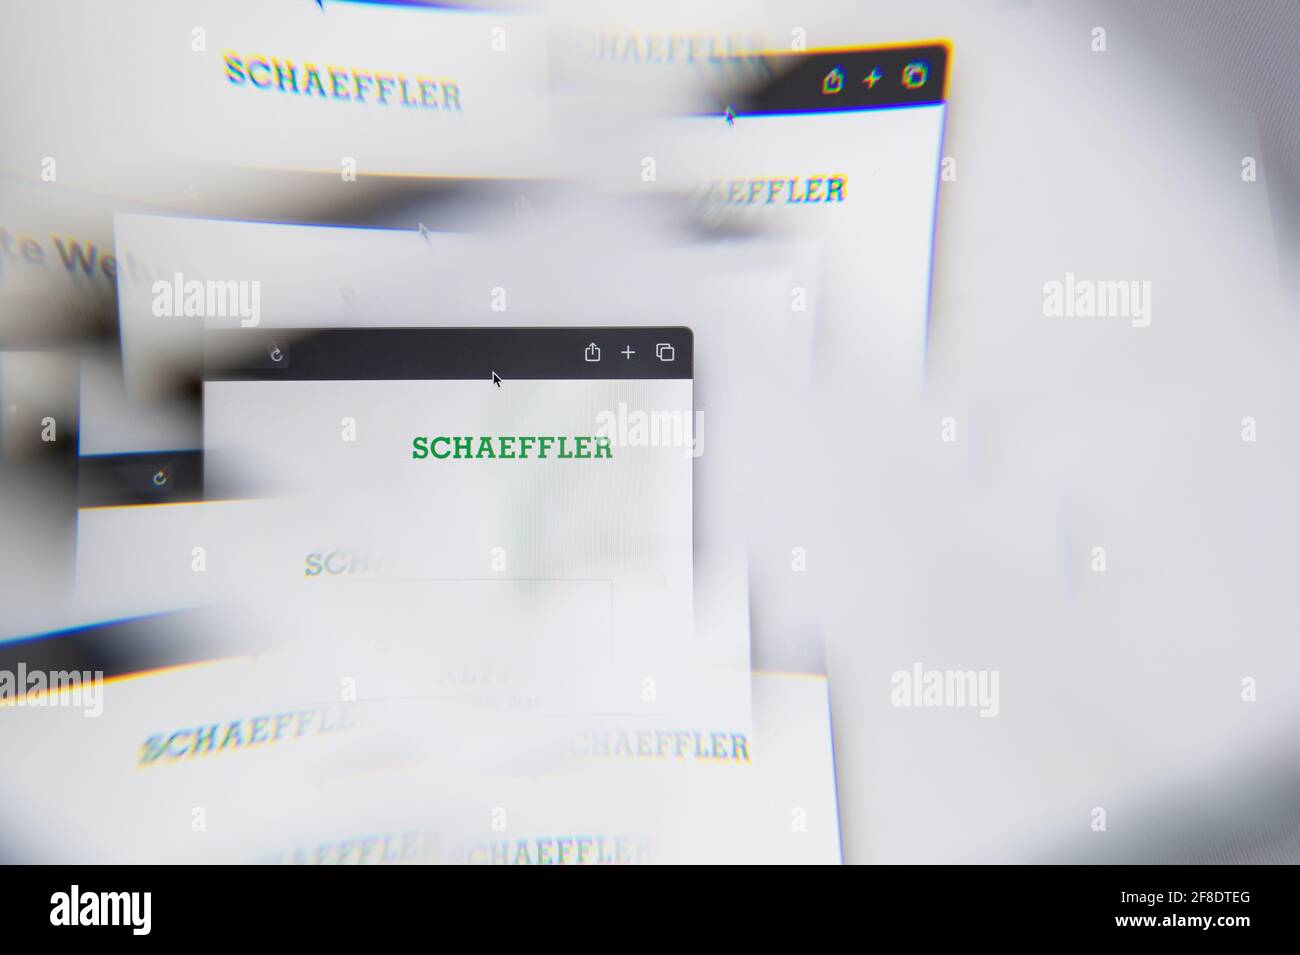 Mailand, Italien - 10. APRIL 2021: Schaeffler-Logo auf dem Laptop-Bildschirm durch ein optisches Prisma gesehen. Illustratives redaktionelles Bild von der Schaeffler Website. Stockfoto